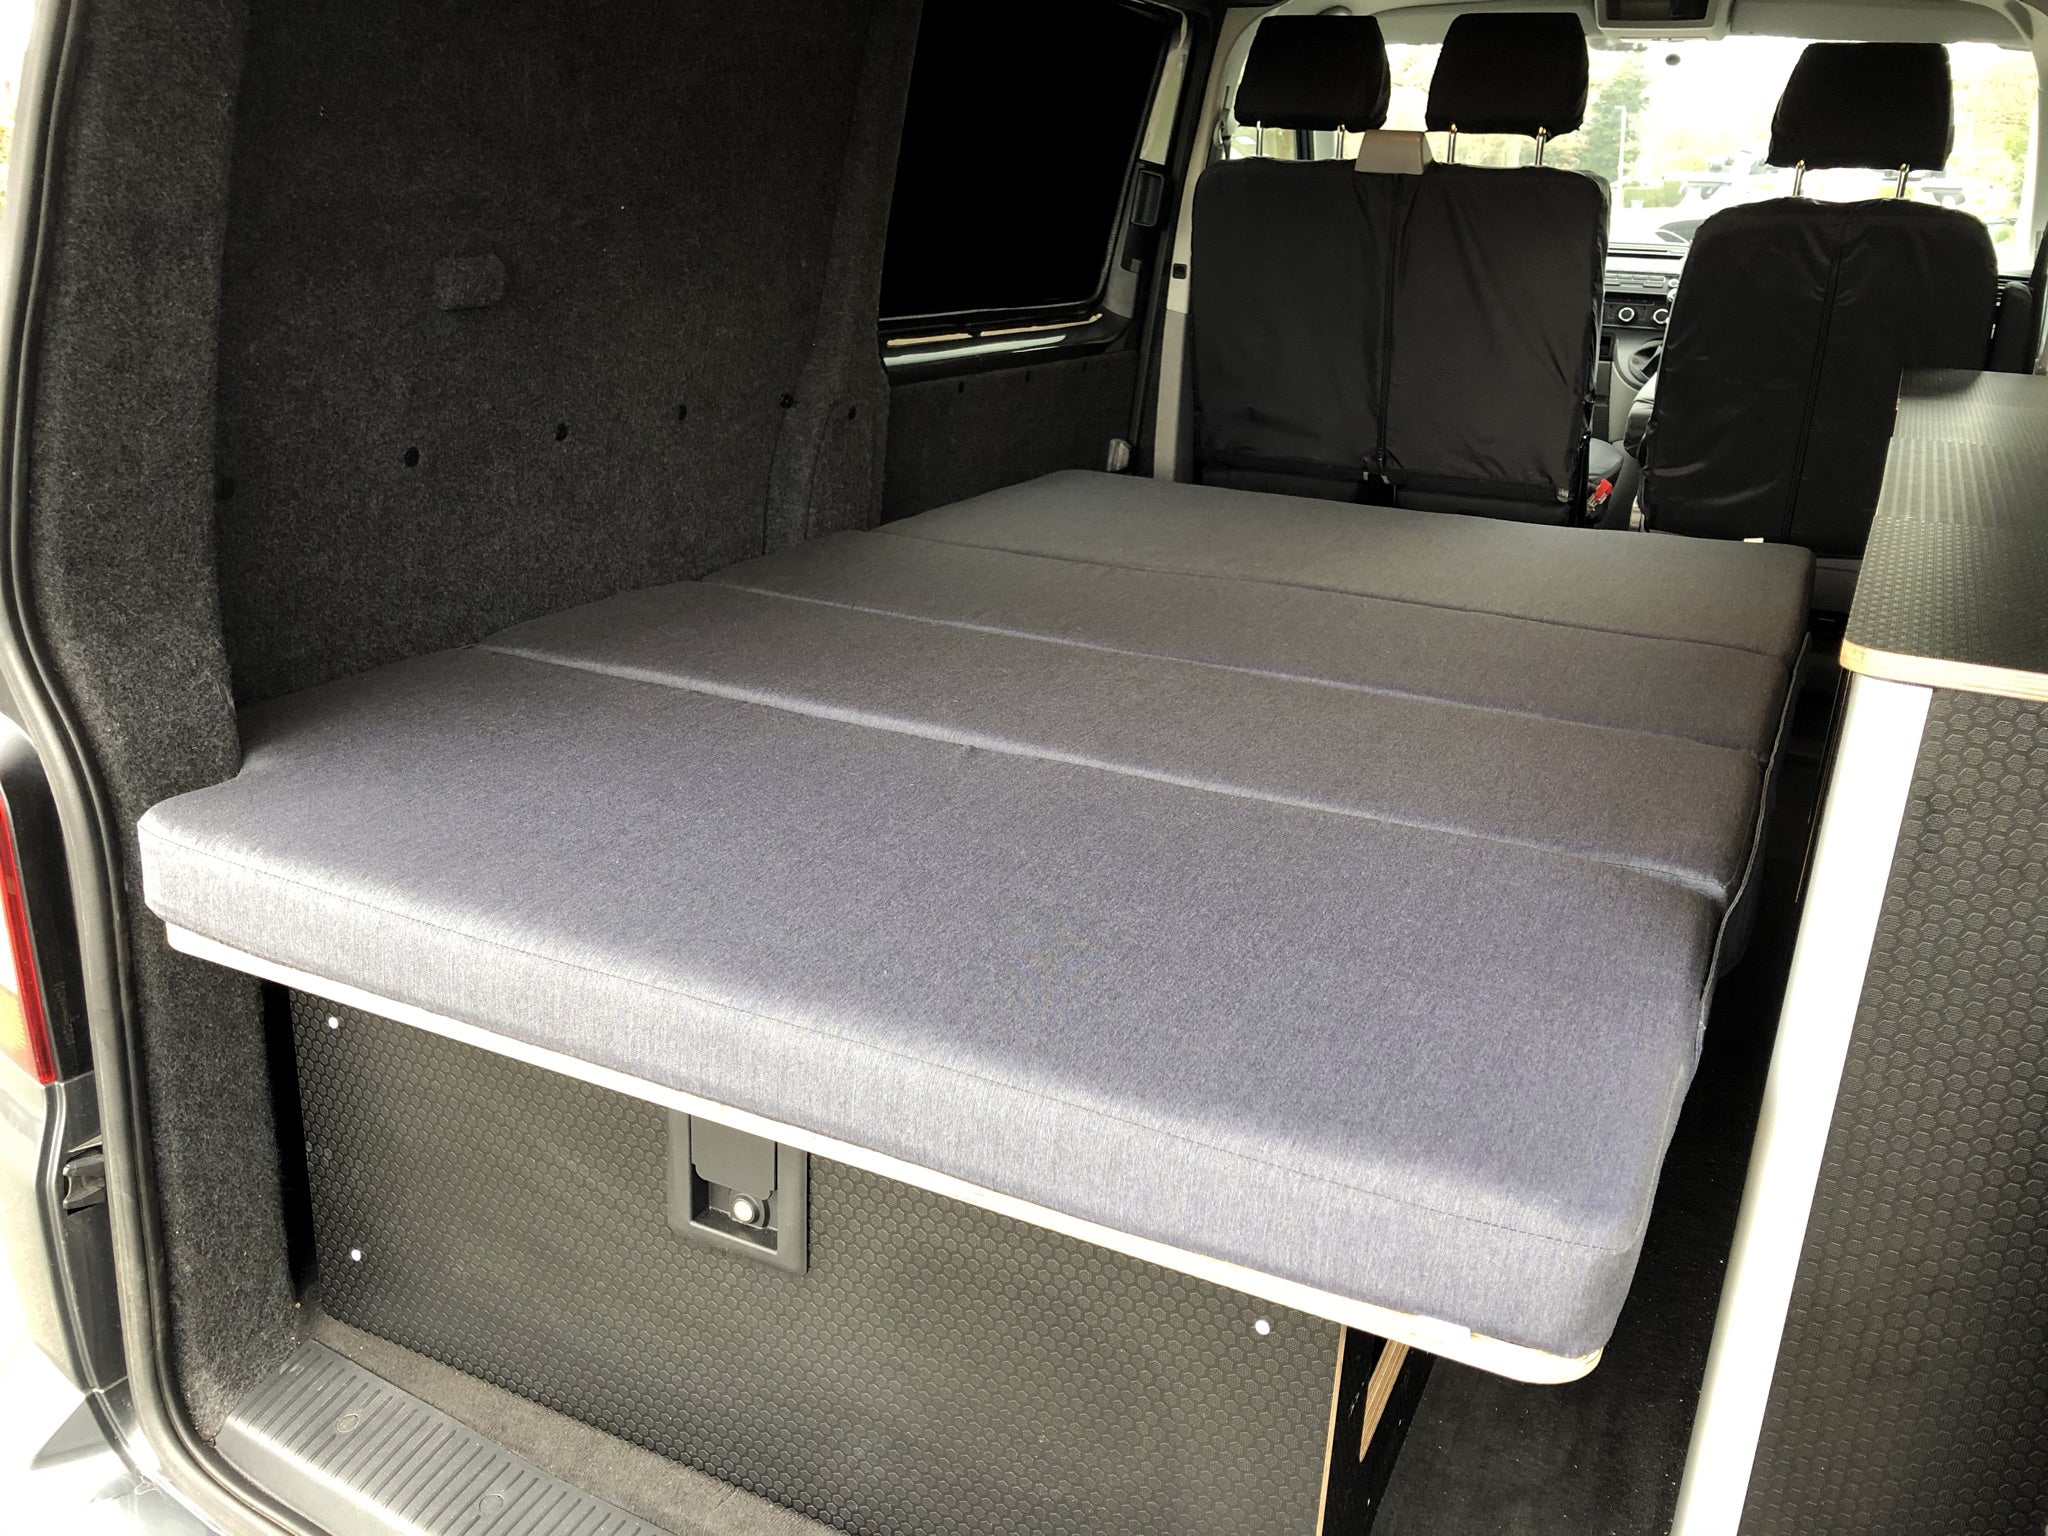 Piggl BIKE-BED for Volkswagen Transporter Campervan Conversions